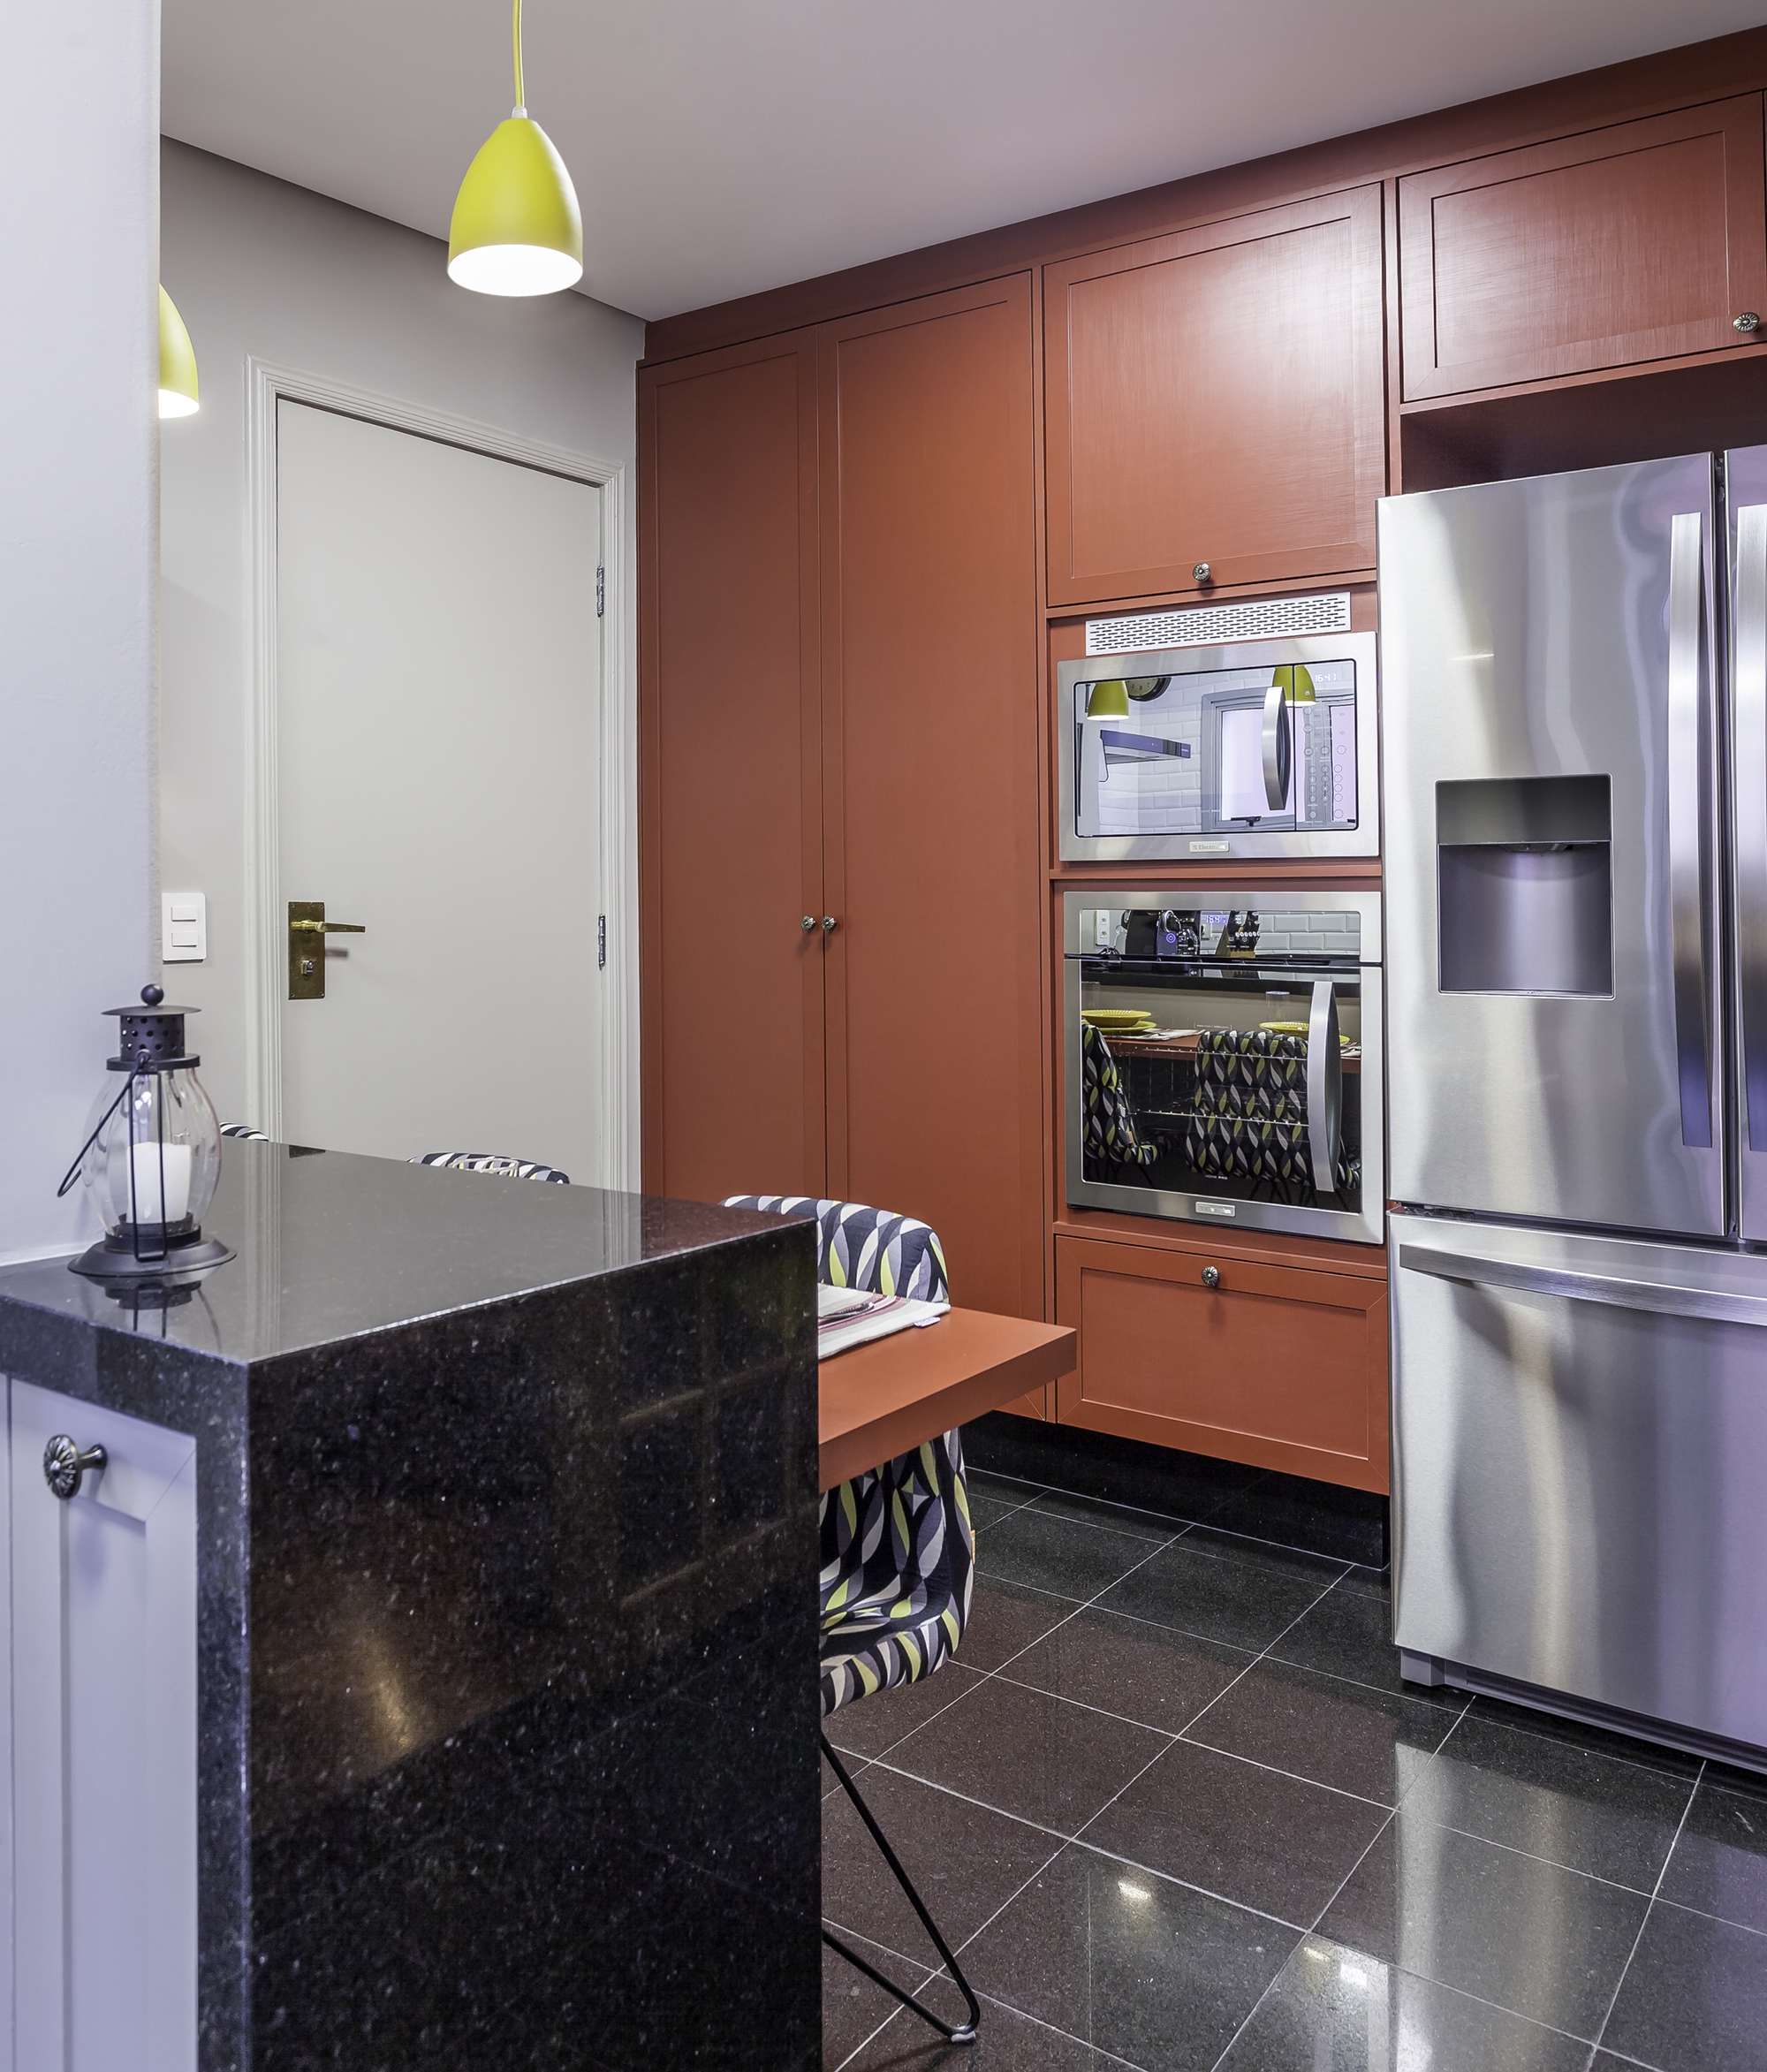 cozinha com decoração de personalidade, armários e mesa vermelhos, piso de granito preto, eletrodomésticos de inox, luminárias pendentes amarelas e bancada de mármore preto.